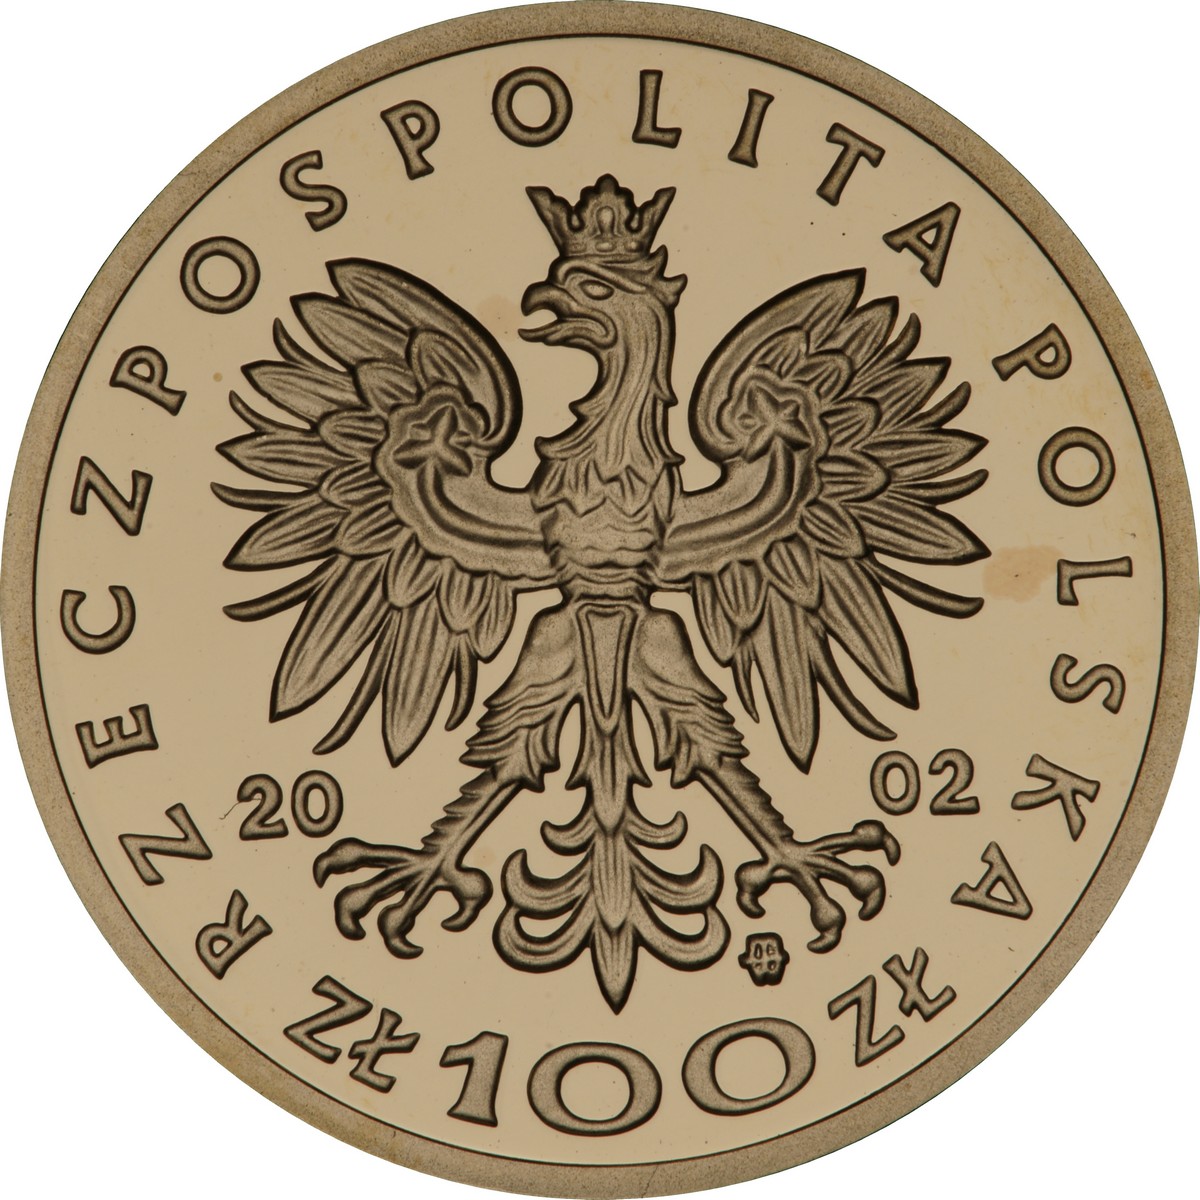 PL 100 Zloty 2002 monogram MW